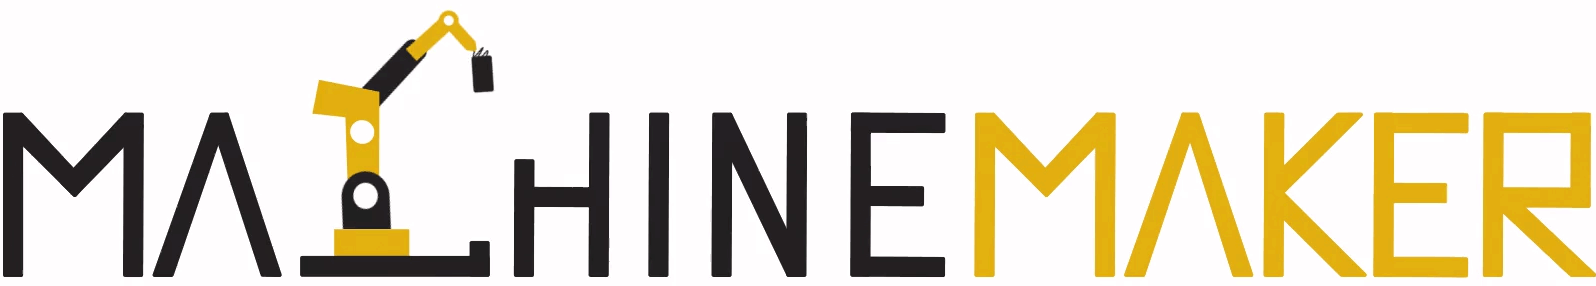 machinemaker-logo